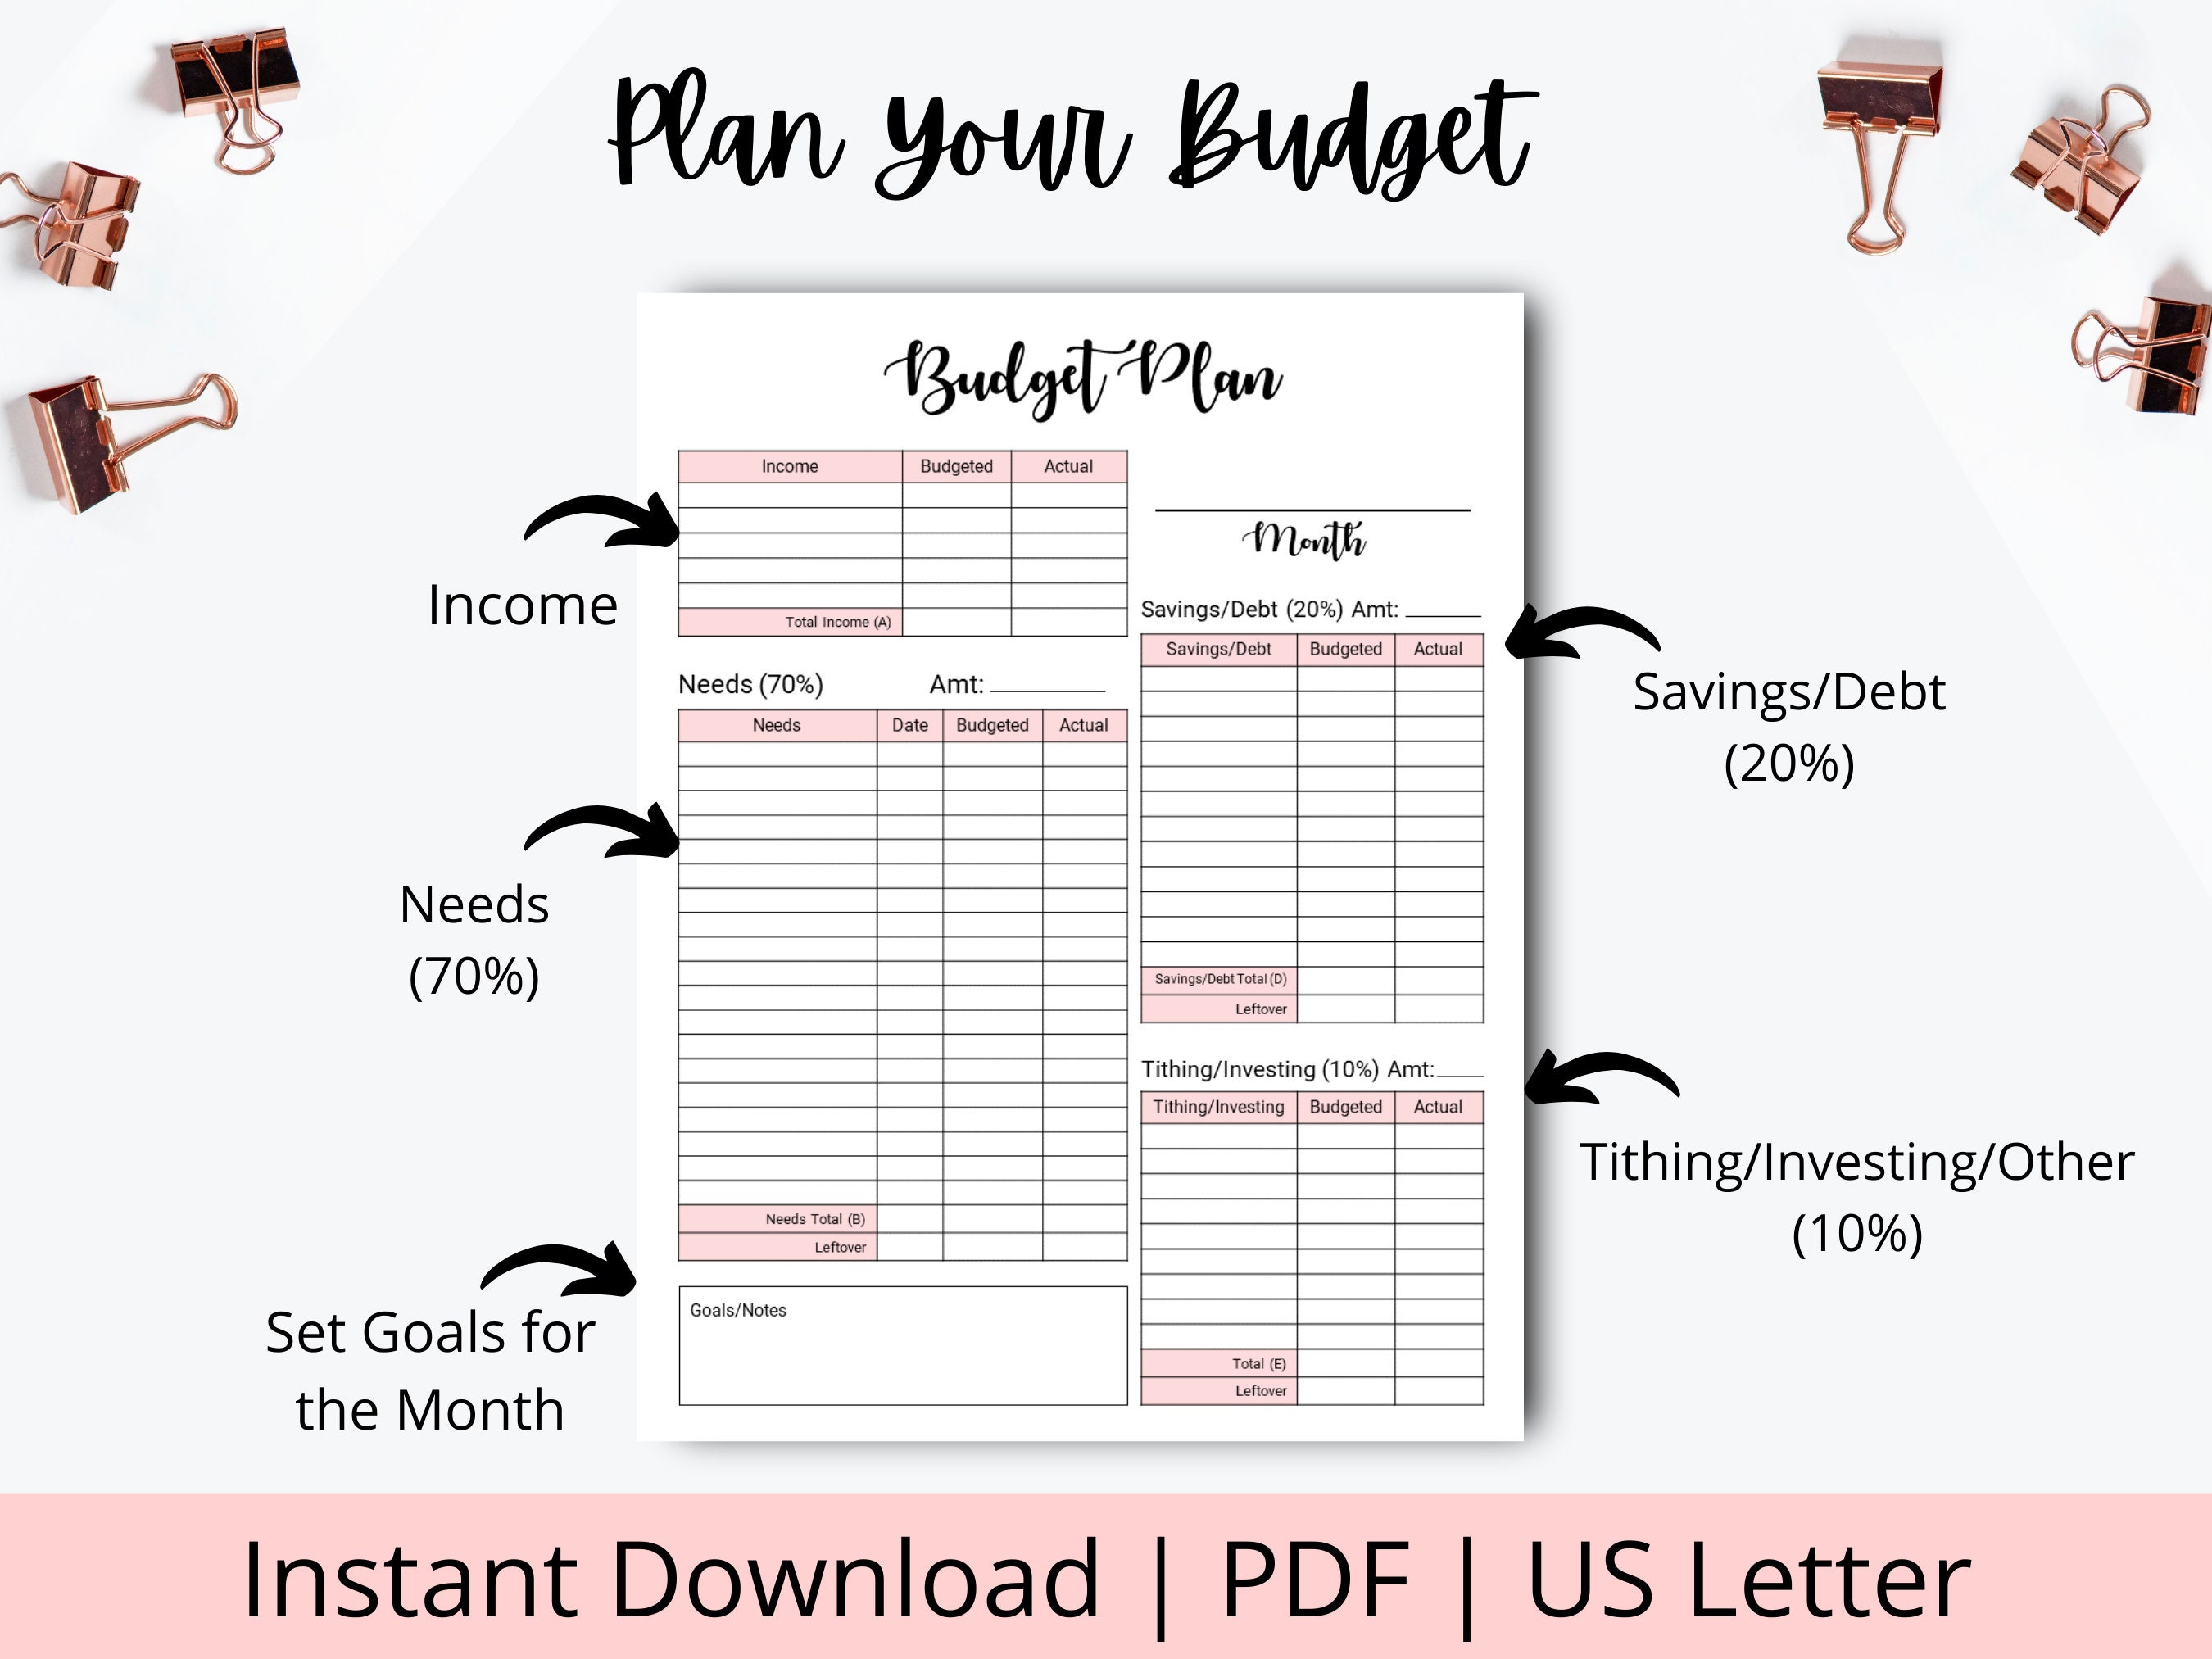 Budget planner,10 fiches pour gérer son budget, outils budgétaires